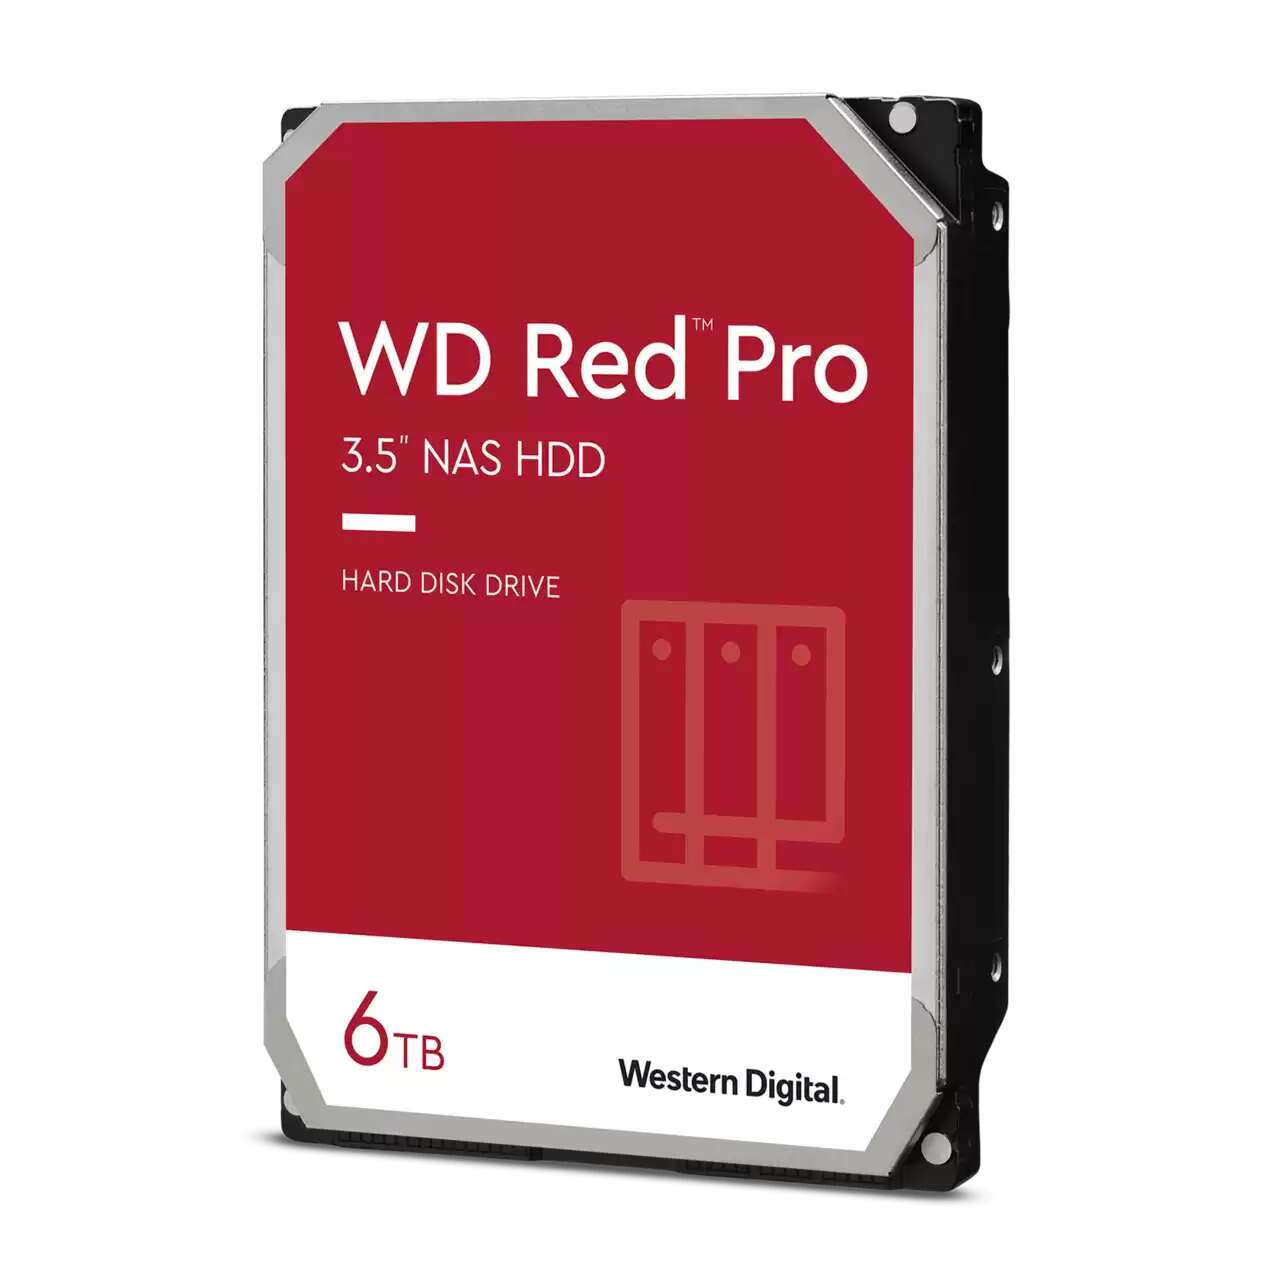 Western digital 6tb red pro sata3 3.5" nas hdd